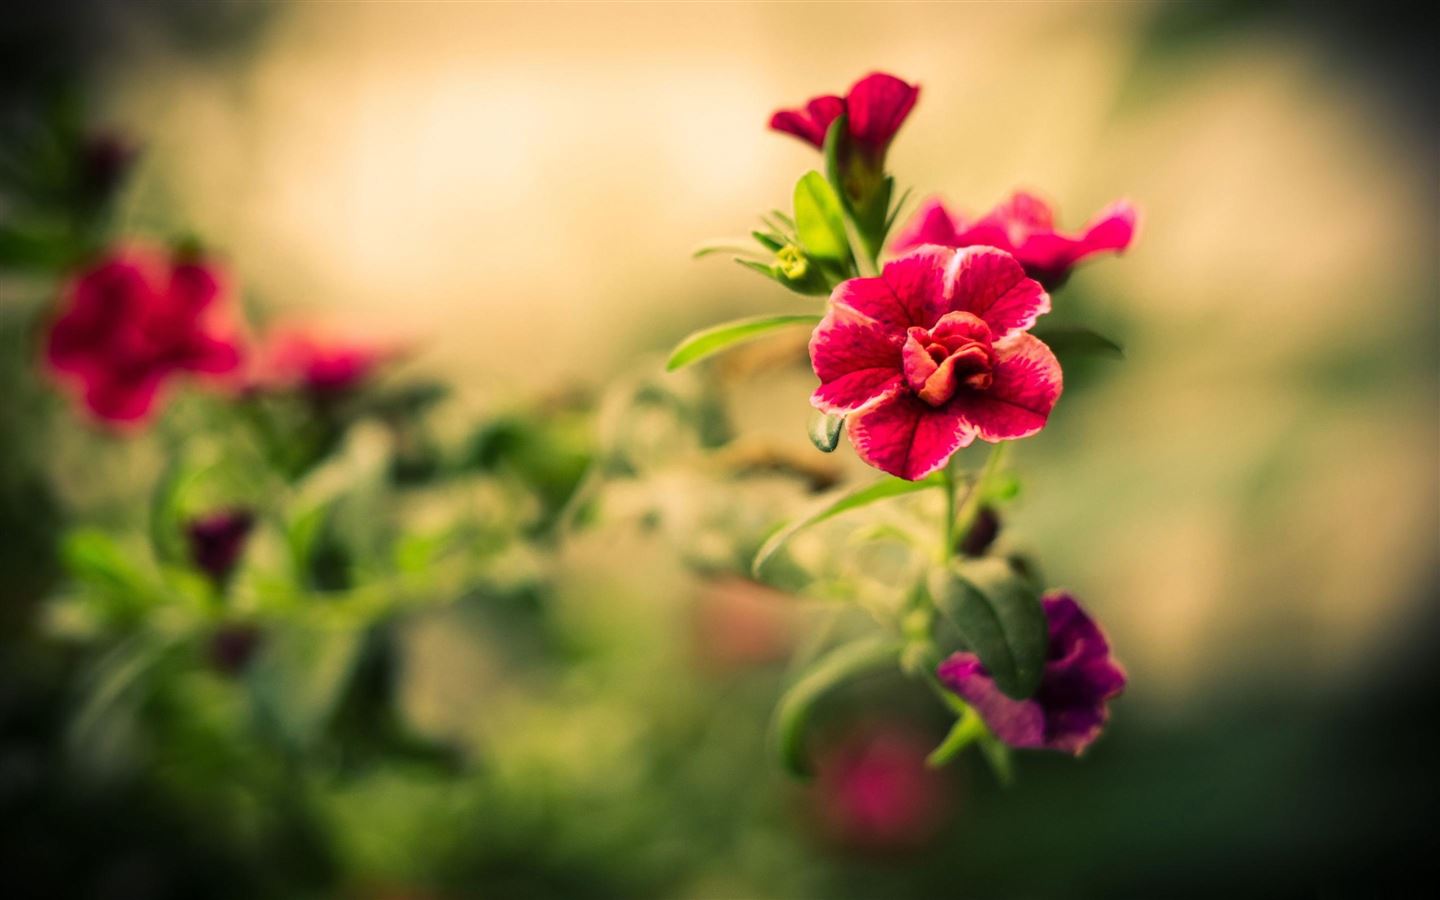 Hoa đỏ mờ đầy hấp dẫn: Hãy chiêm ngưỡng vẻ đẹp tuyệt vời của một loài hoa đỏ mờ, màu sắc cuốn hút sẽ khiến bạn say đắm. Bức hình sẽ đưa bạn vào một thế giới thần tiên với vẻ đẹp khác lạ, tinh tế của những cánh hoa. Đừng bỏ lỡ cơ hội để được đắm mình vào vẻ đẹp của bức hình này.